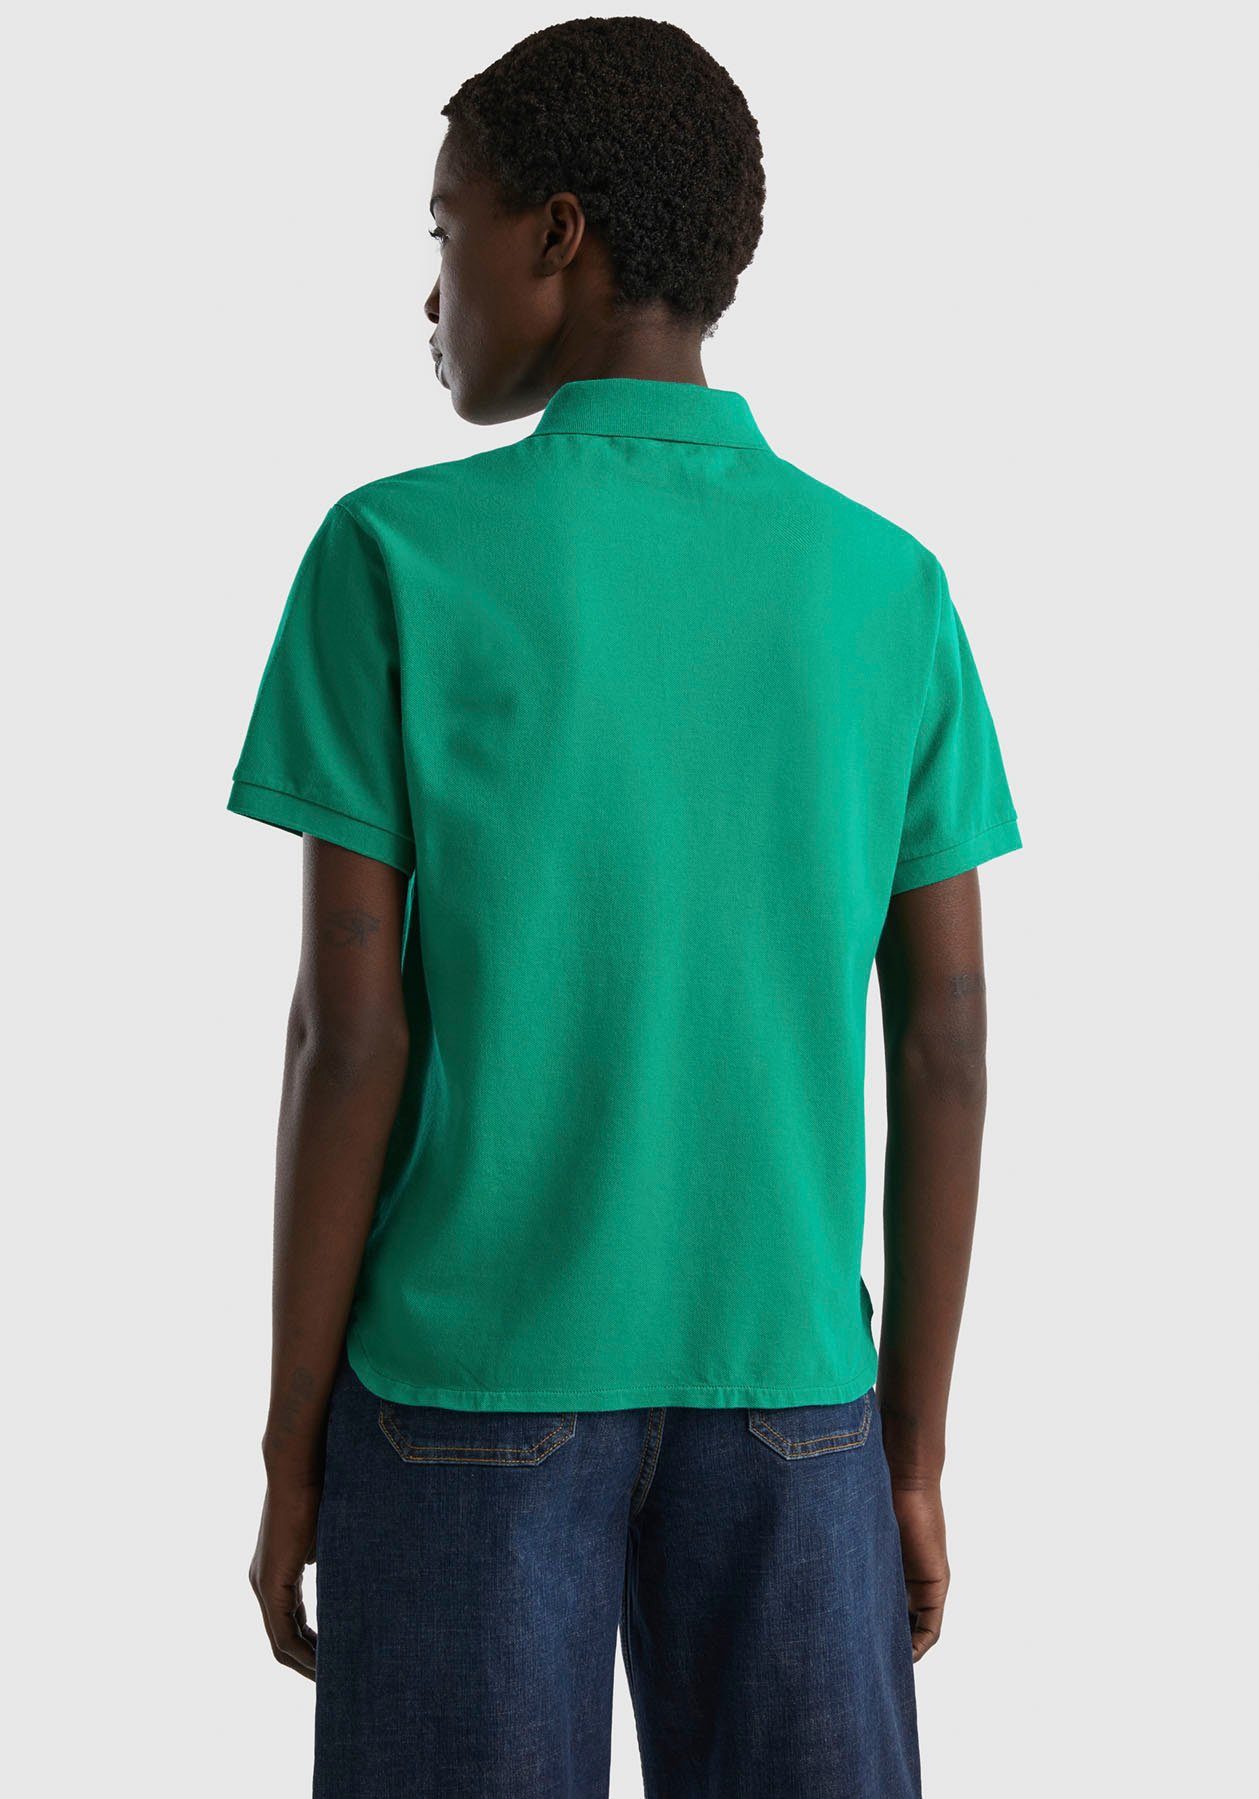 of grün mit Knöpfen Benetton Poloshirt United perlmuttfarbenen Colors